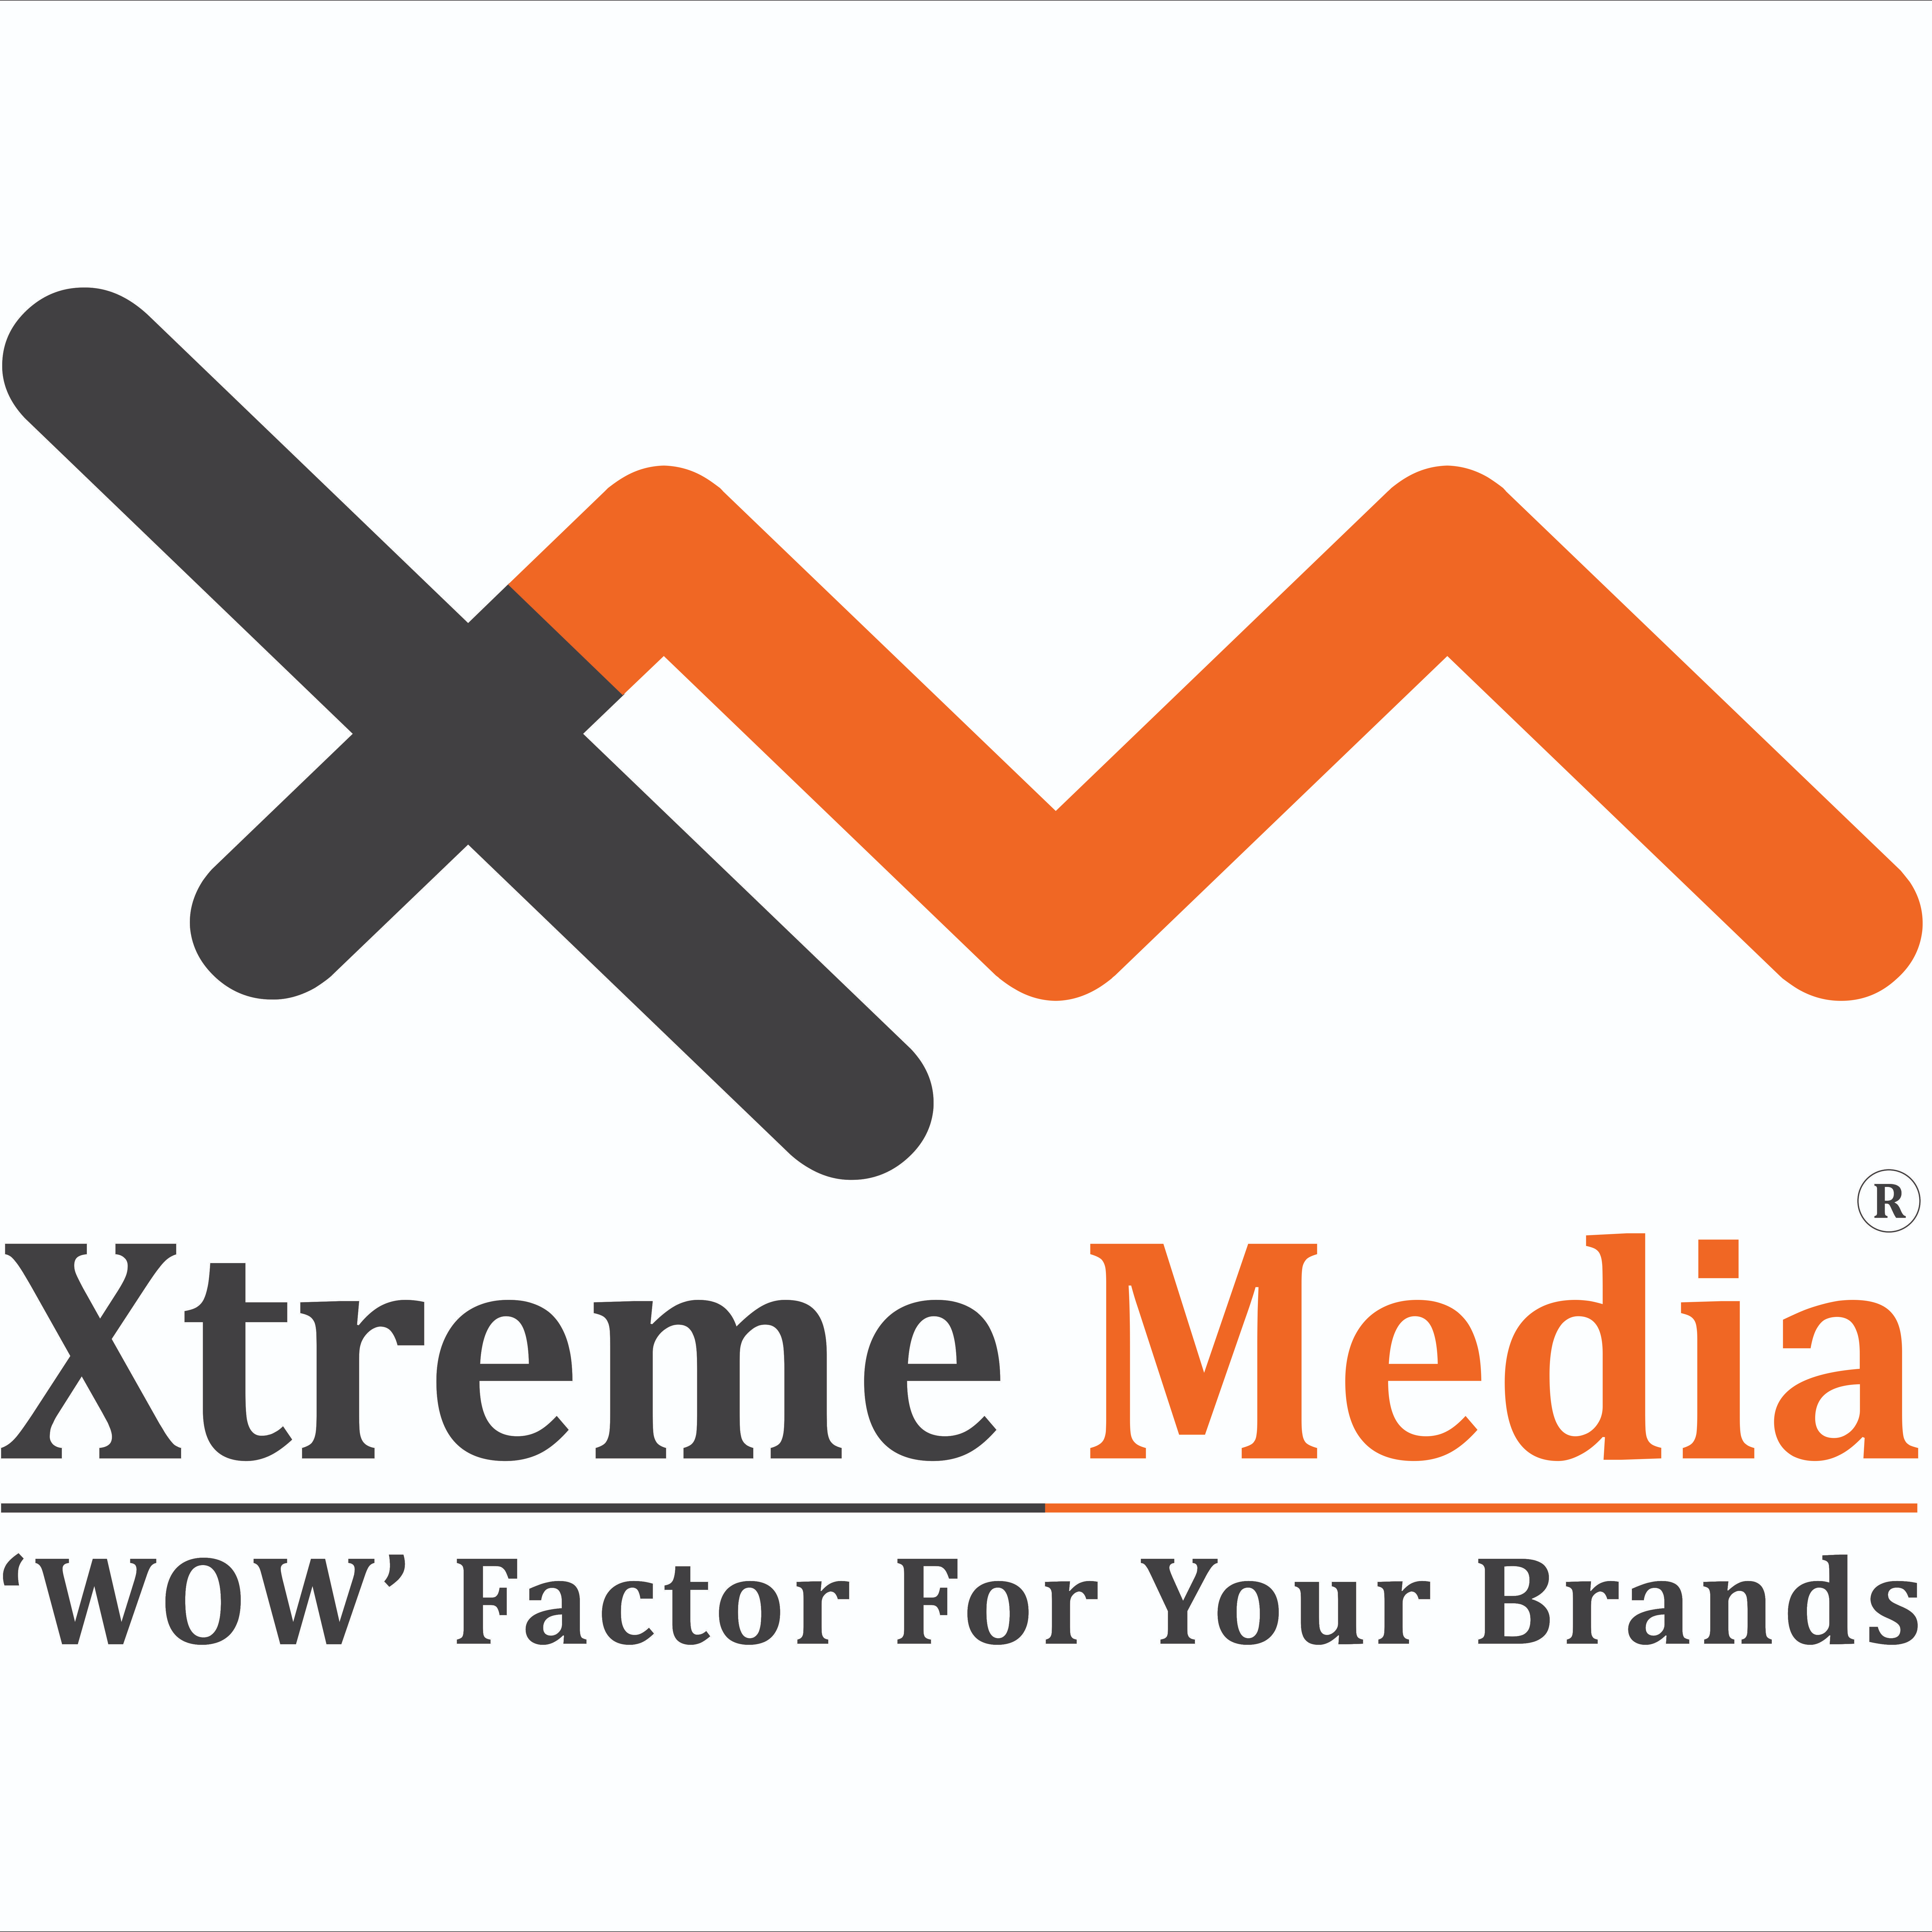 Xtreme Media Digital Signage 